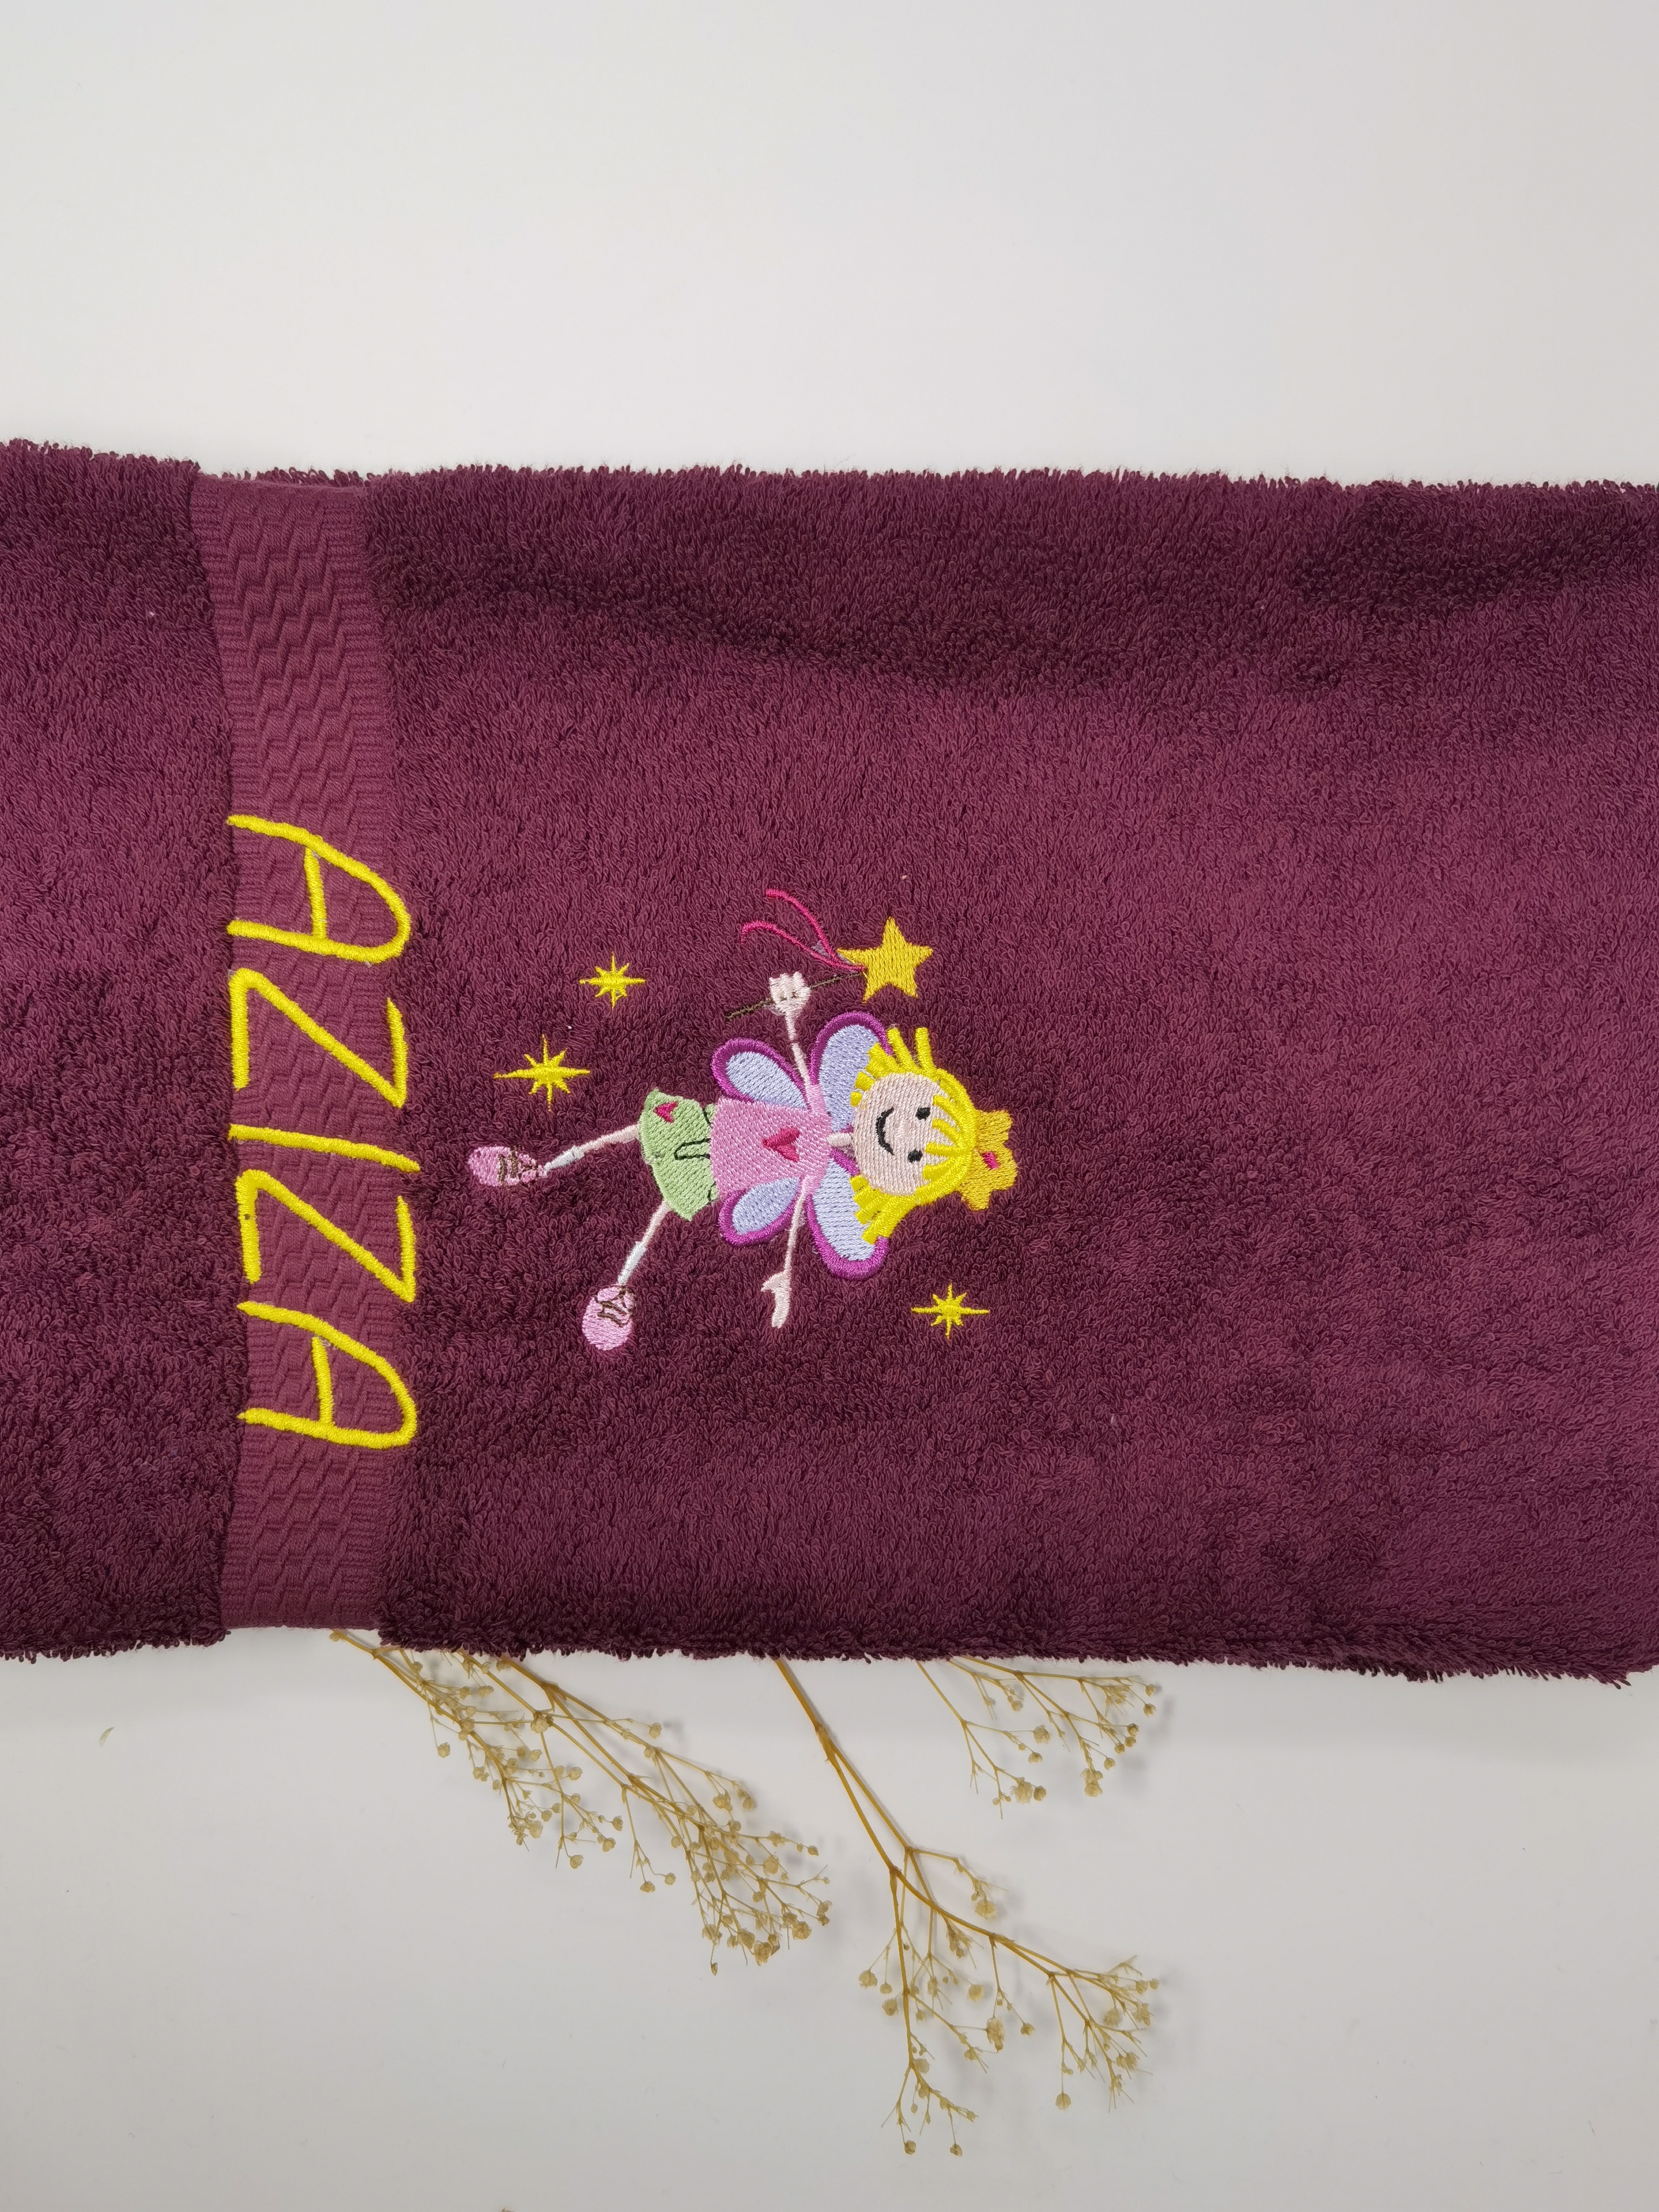 Elfe Fee 01  Handtuch Duschtuch bestickt & personalisierbar Super Qualität